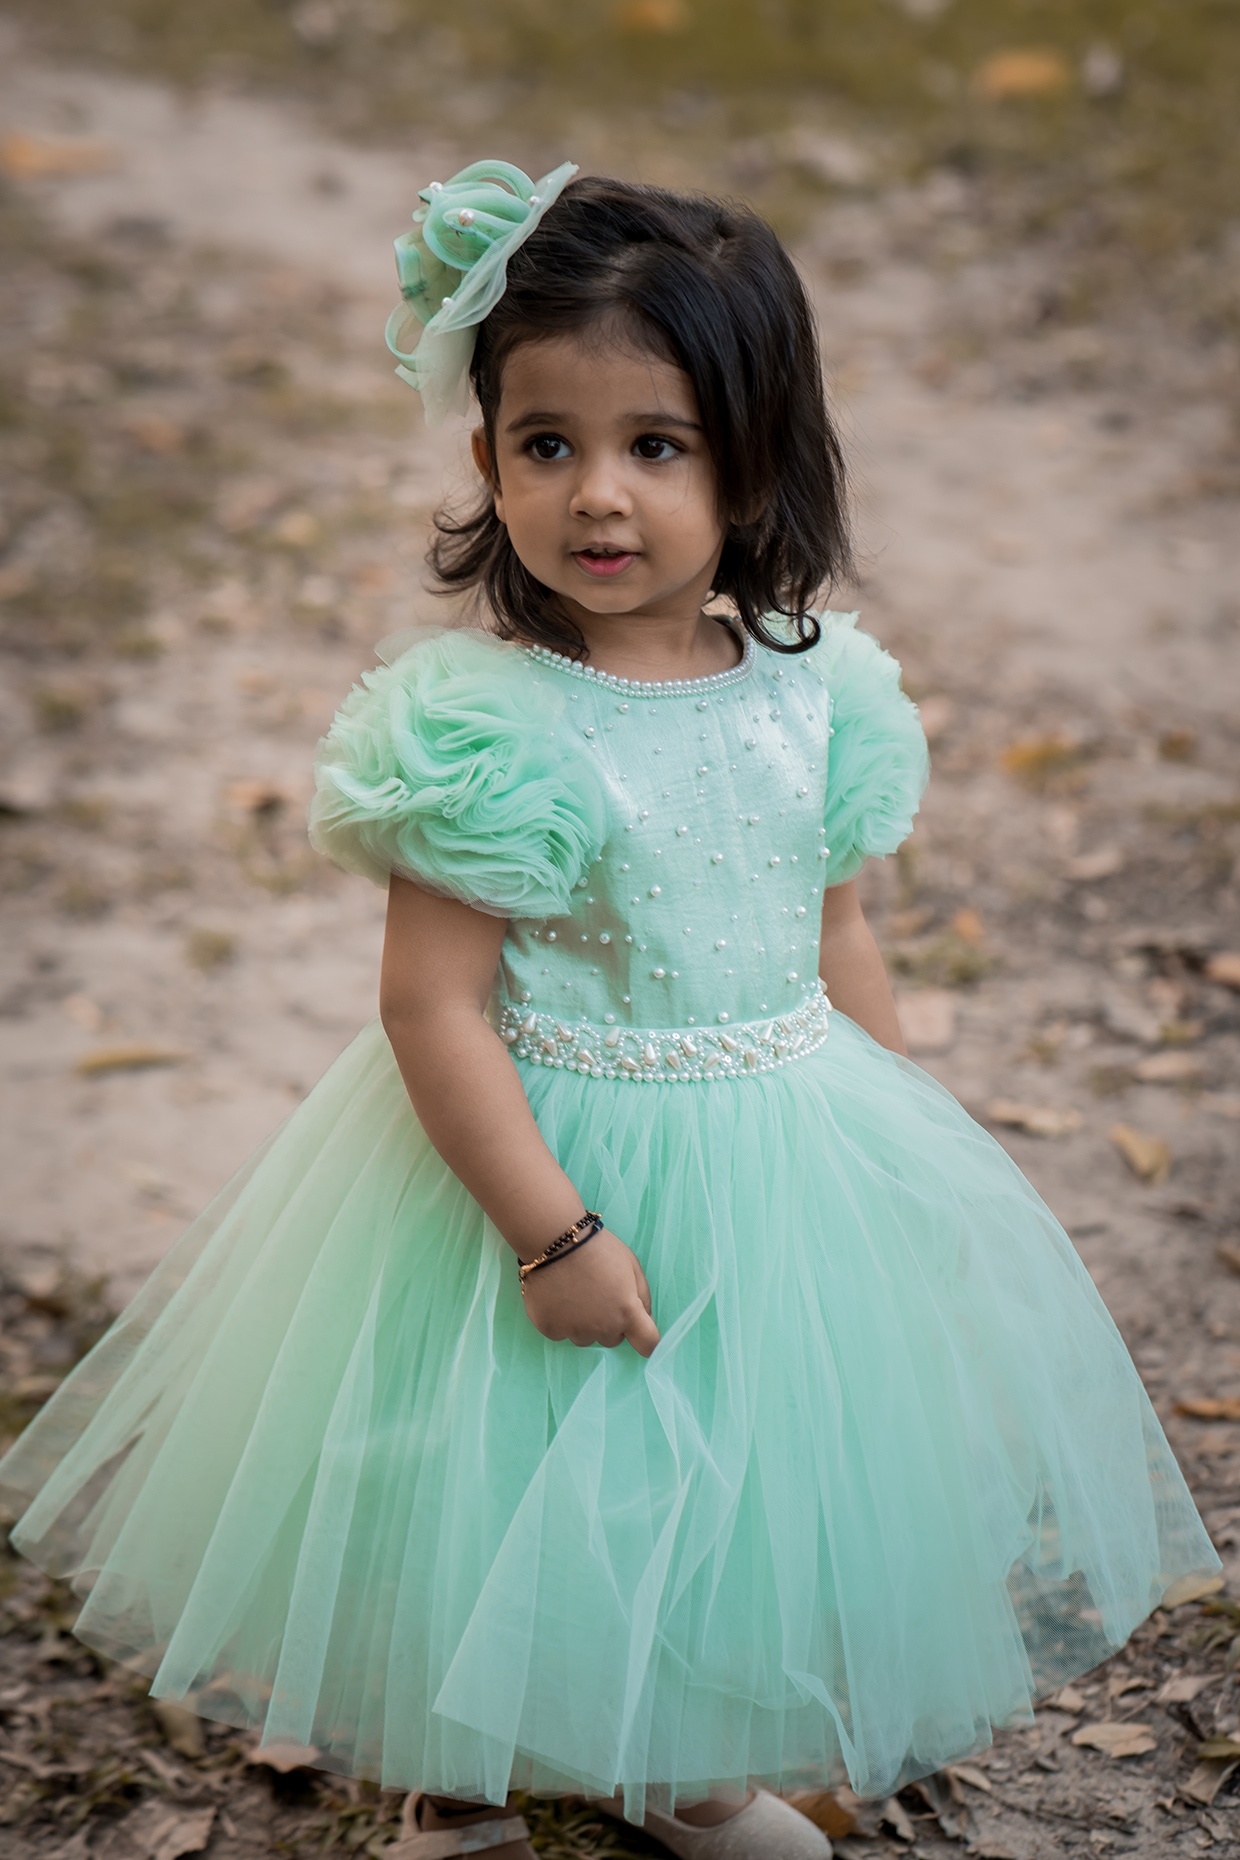 Pentelei 2311 KIDS DRESS | Girls dresses, Kids gown, Gowns for girls